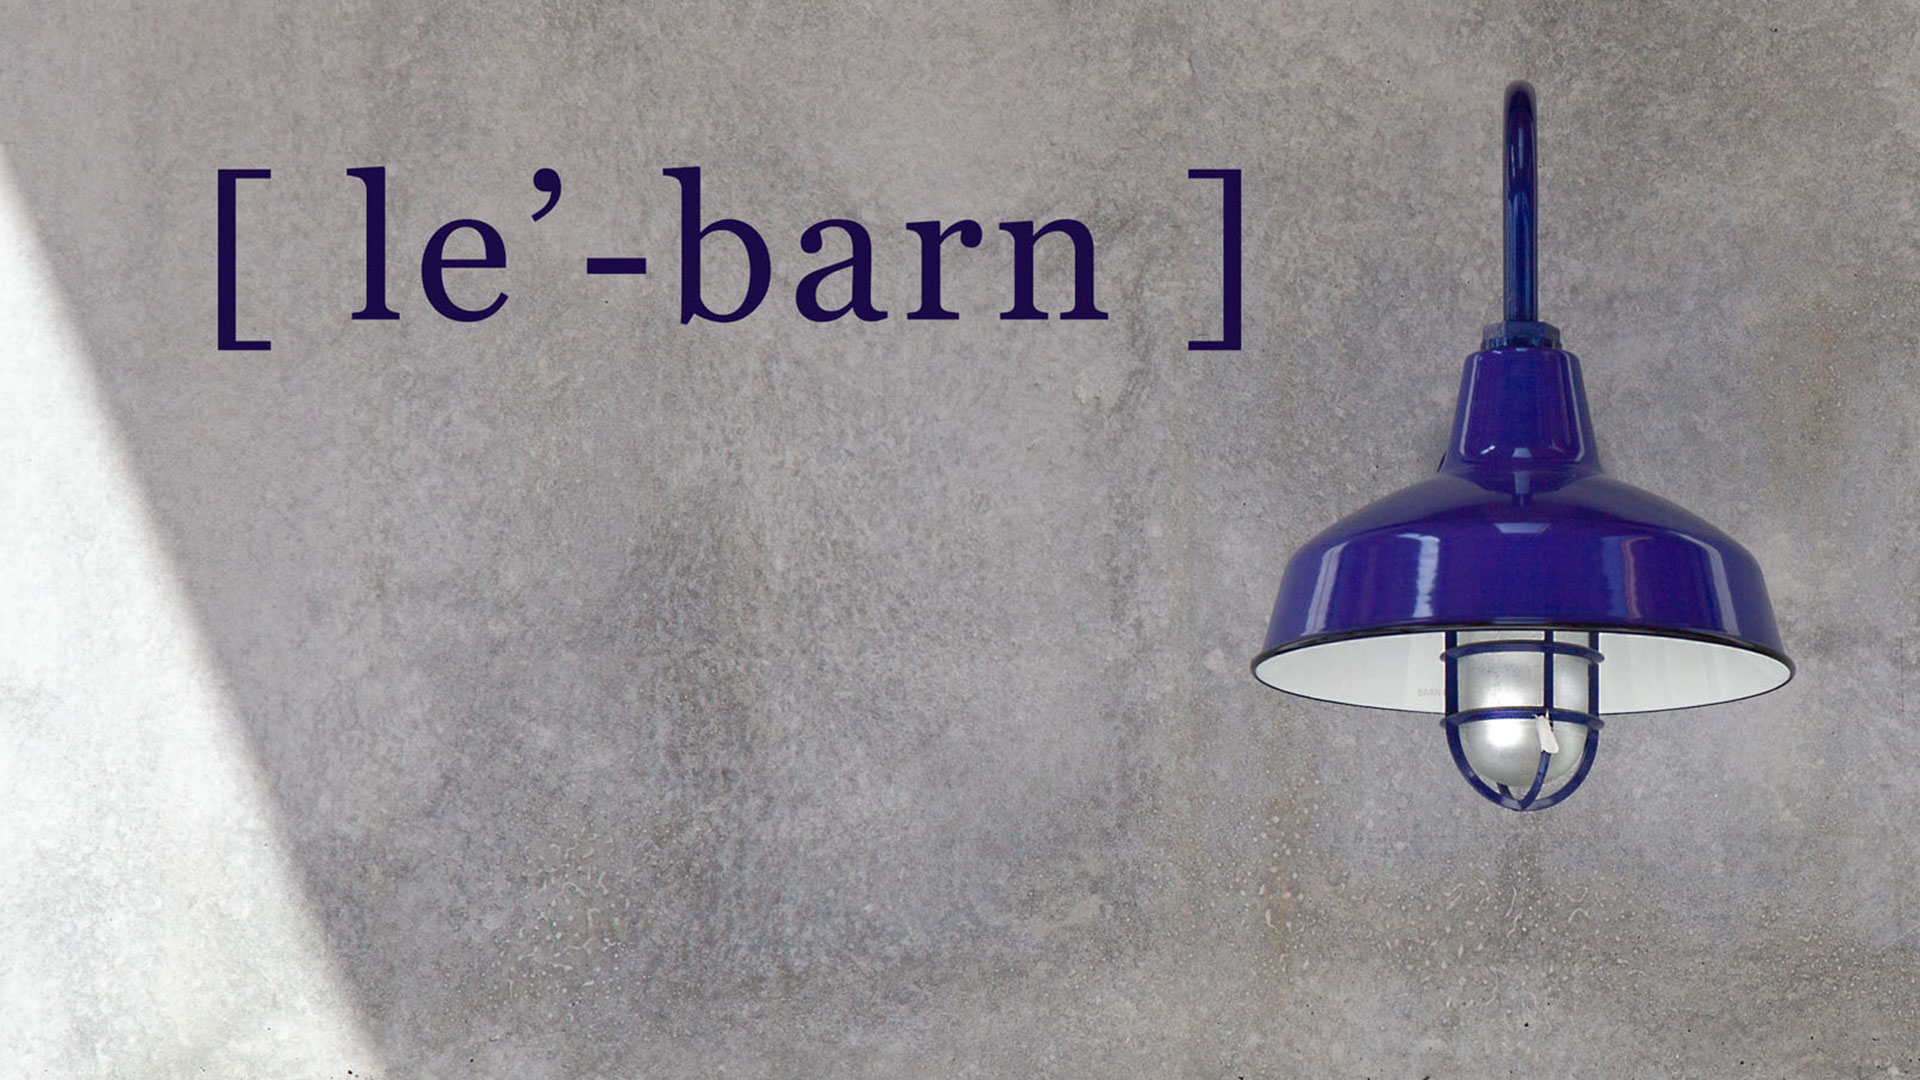 Le' Barn, purple letters against gray concrete. Purple light fixture adjacent